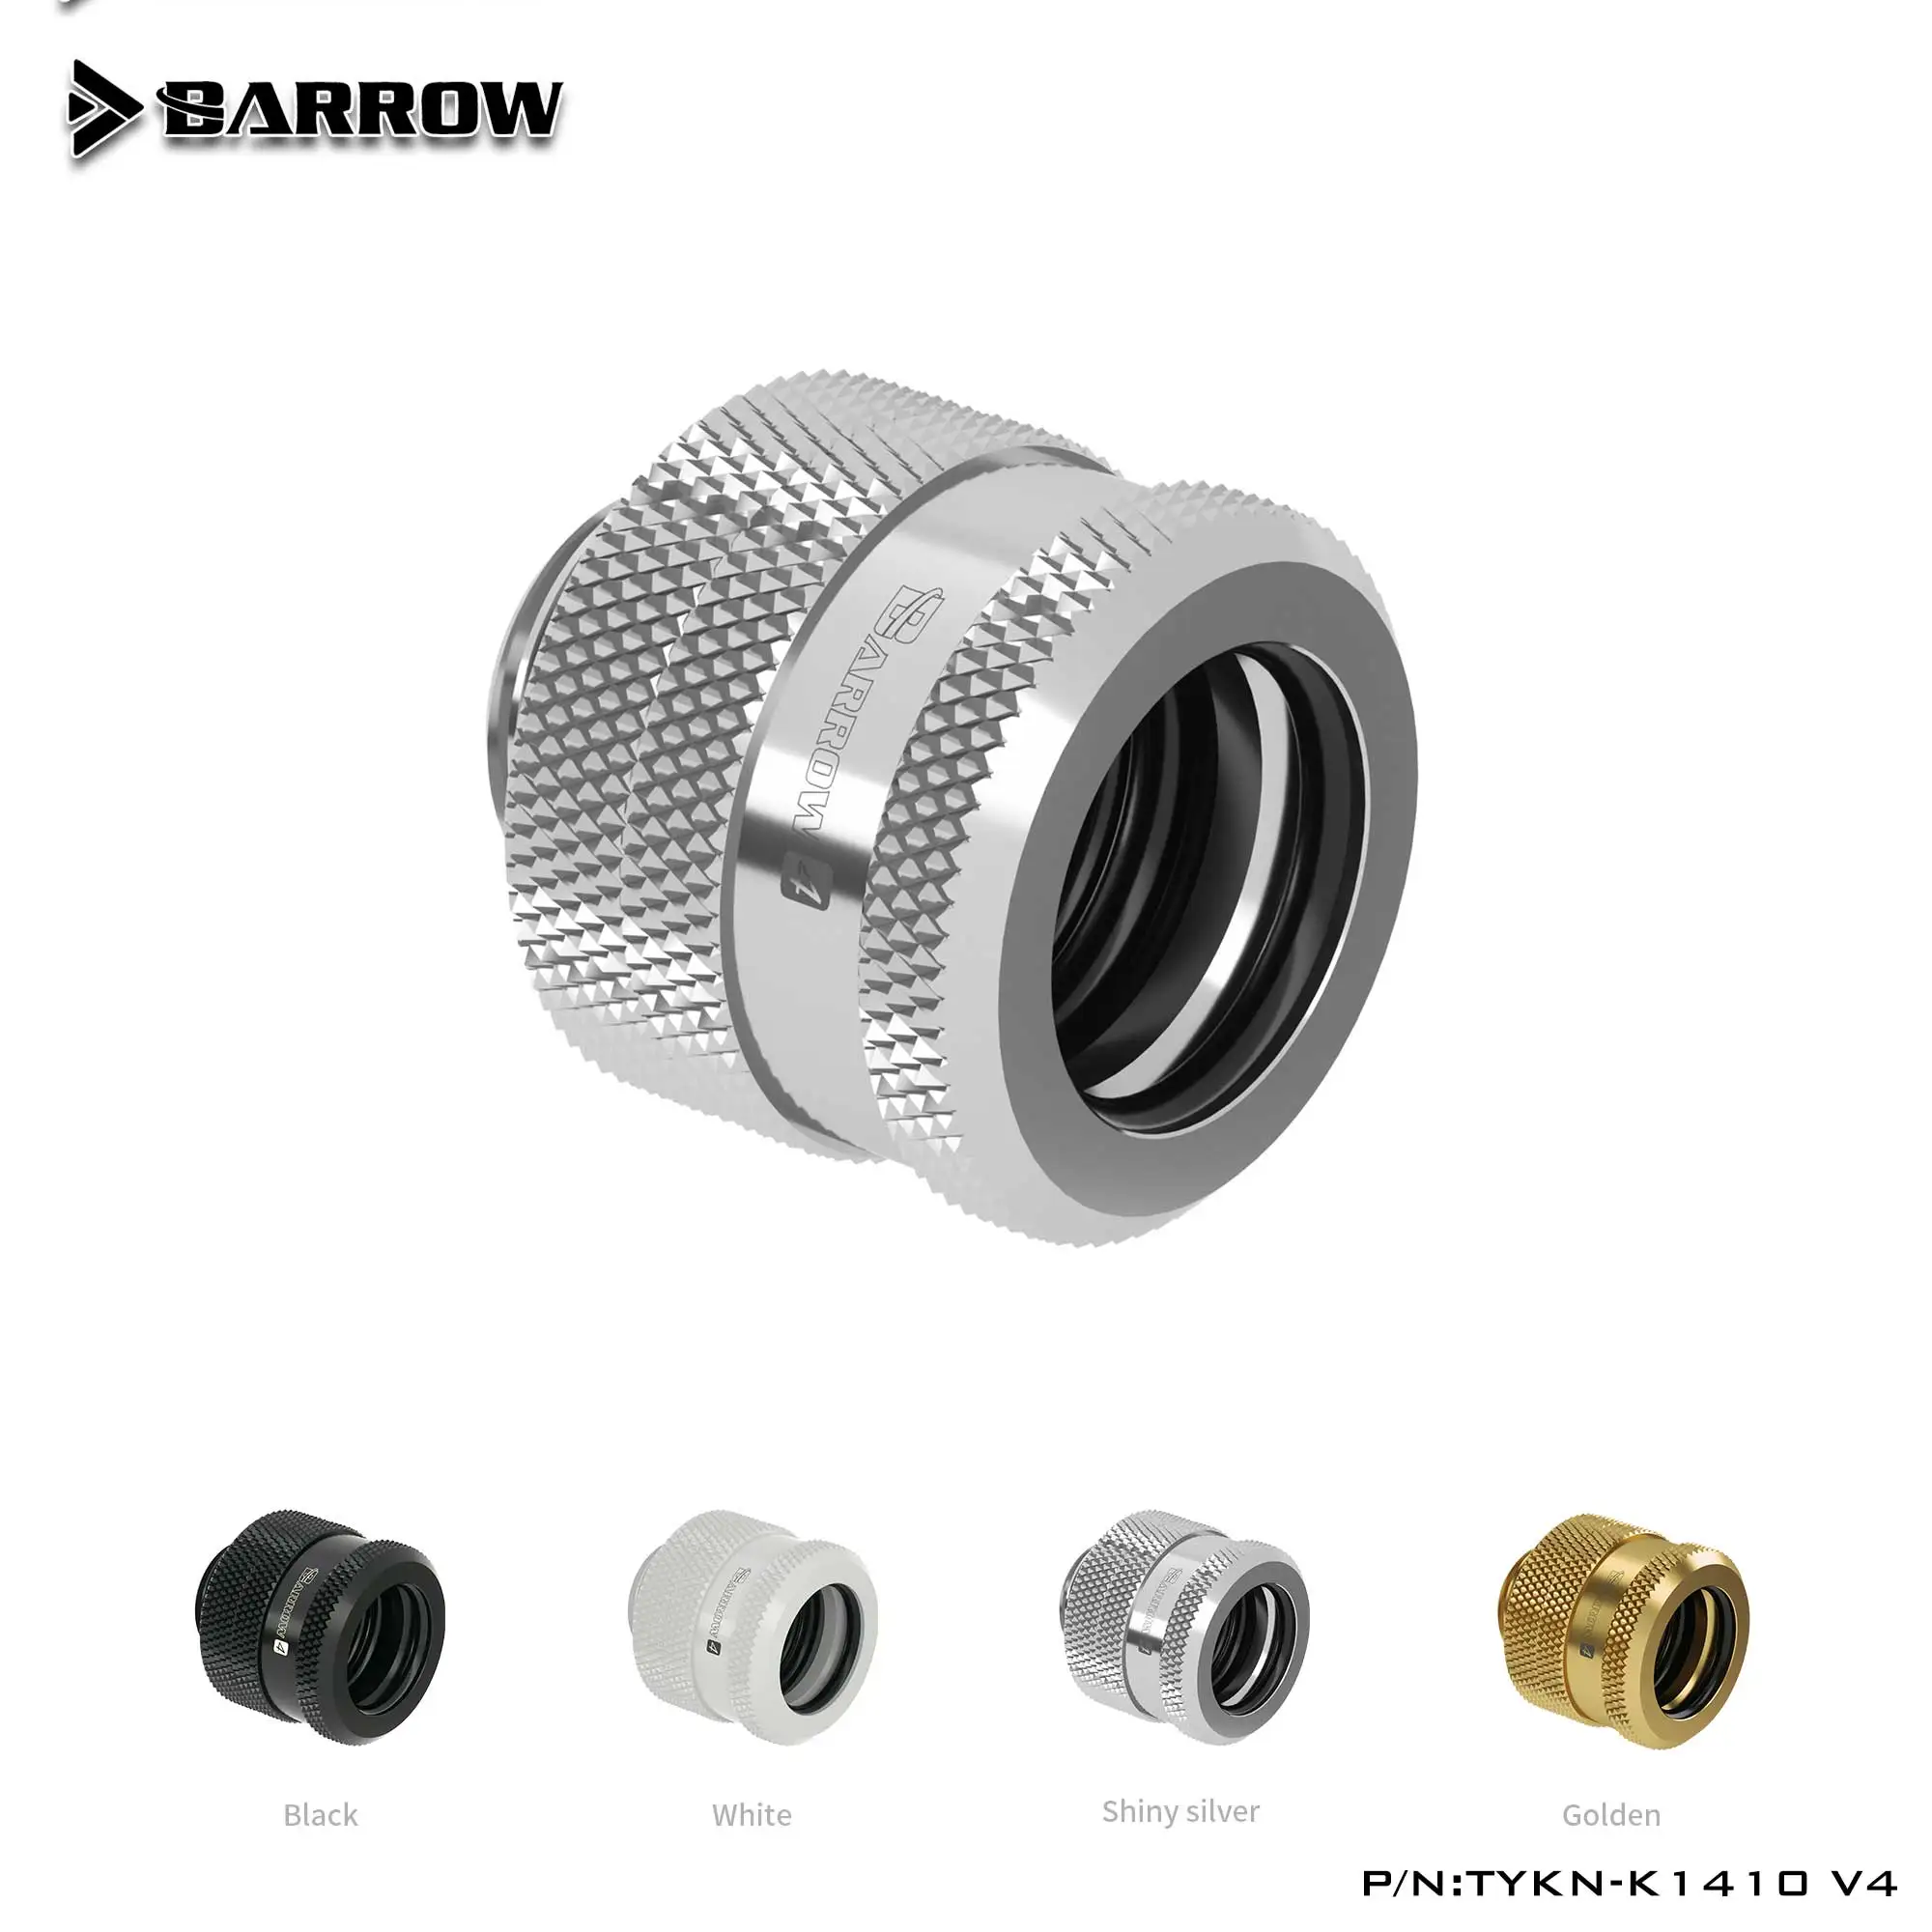 

Barrow TYKN-K1410 V4 G1/4 фитинг для жесткой трубки, охлаждение воды, адаптер Asik od14 мм, охладитель жидкости для ПК, серебристый/черный/белый/золотой